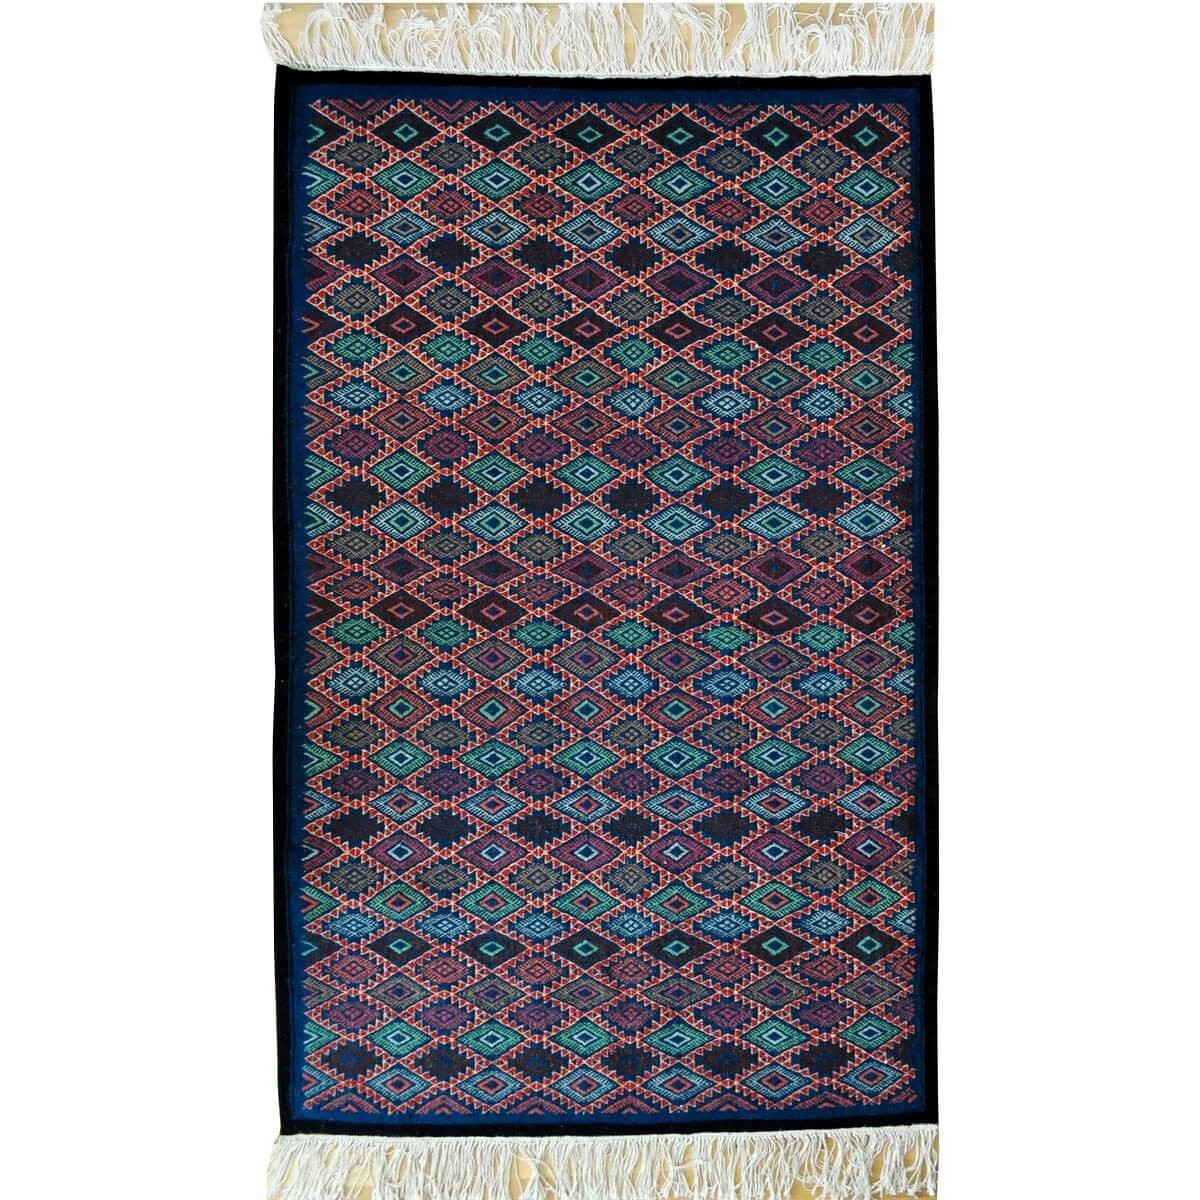 Berber Teppich Teppich Kelim Nassim 120x195 Blau/Rot/Grün (Handgewebt, Wolle) Tunesischer Kelim-Teppich im marokkanischen Stil. 